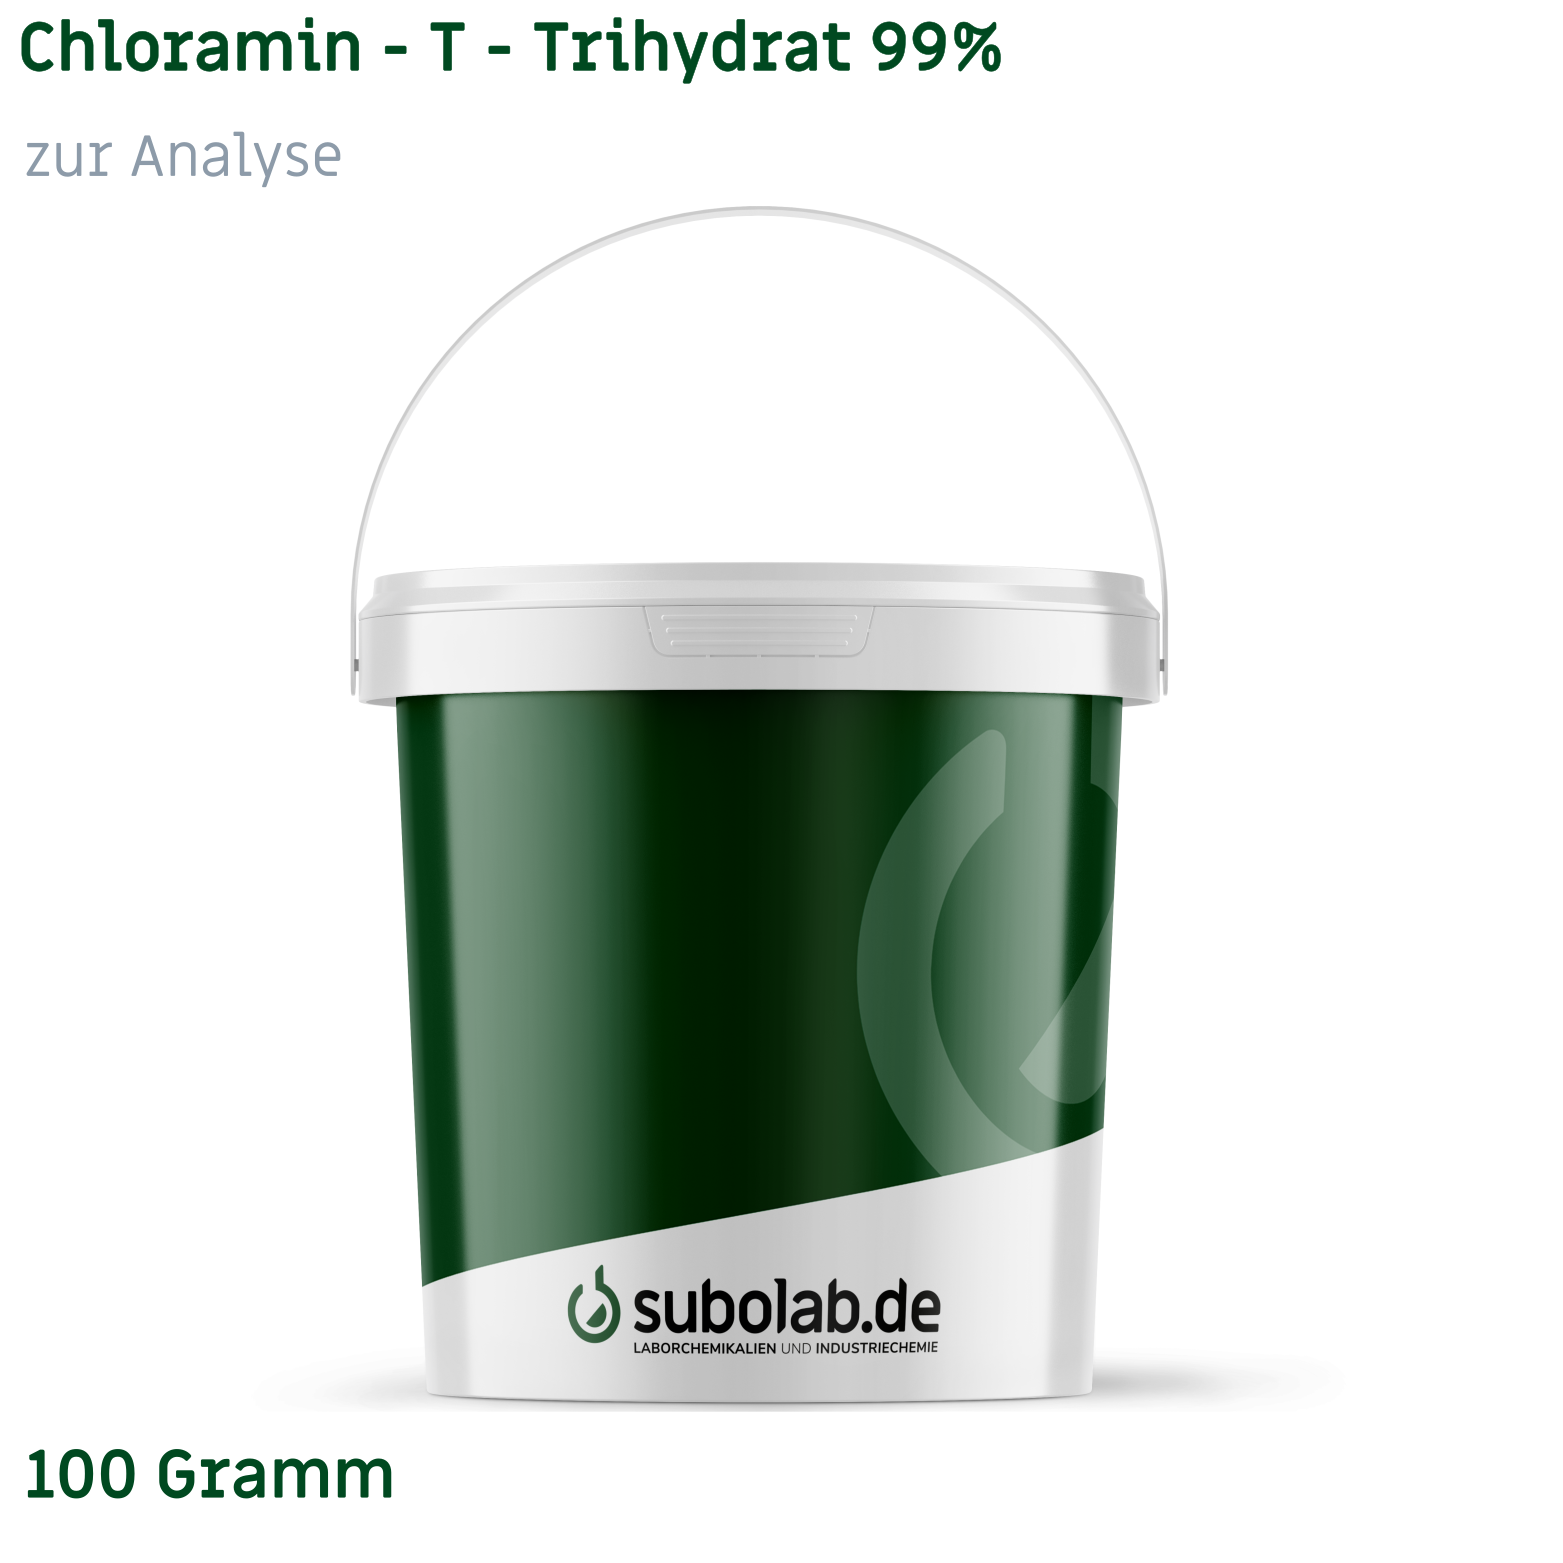 Bild von Chloramin - T - Trihydrat 99% zur Analyse (100 Gramm)